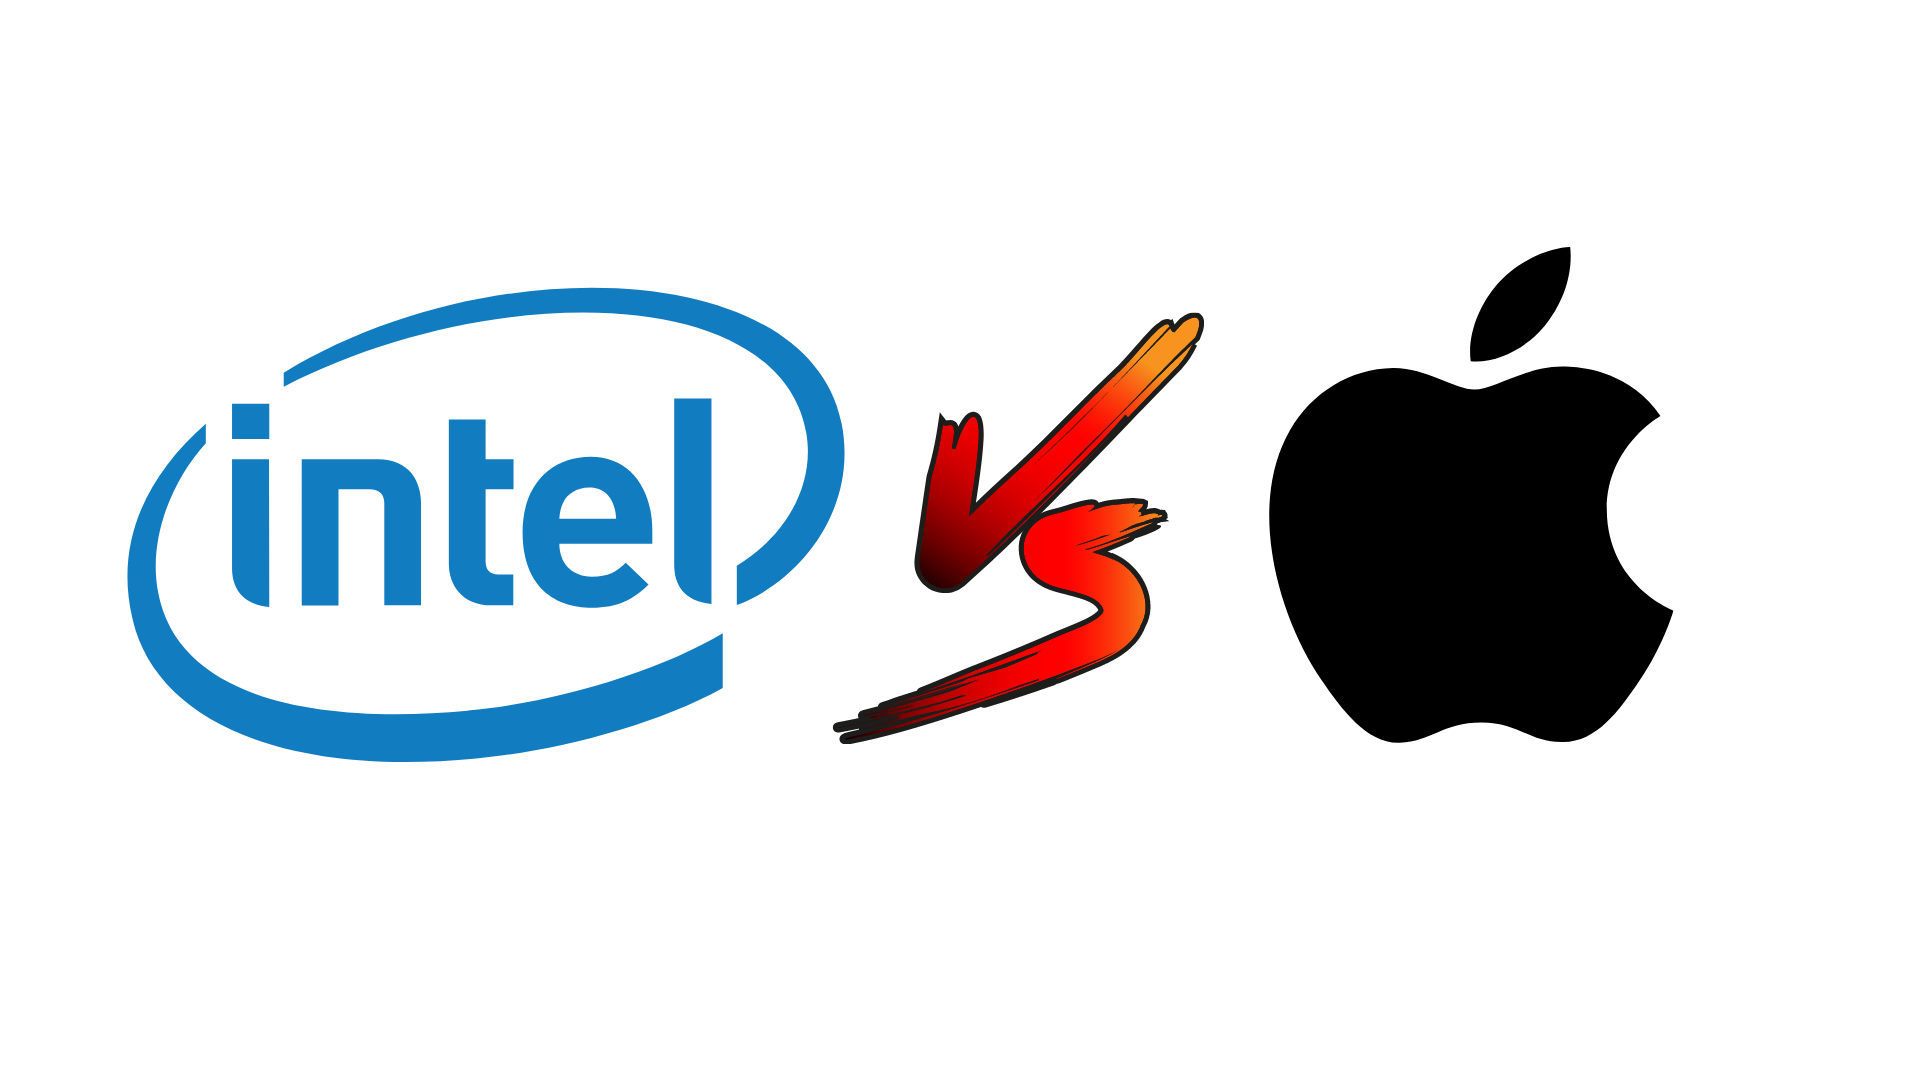 Intel contro Apple: la battaglia dei chip continua